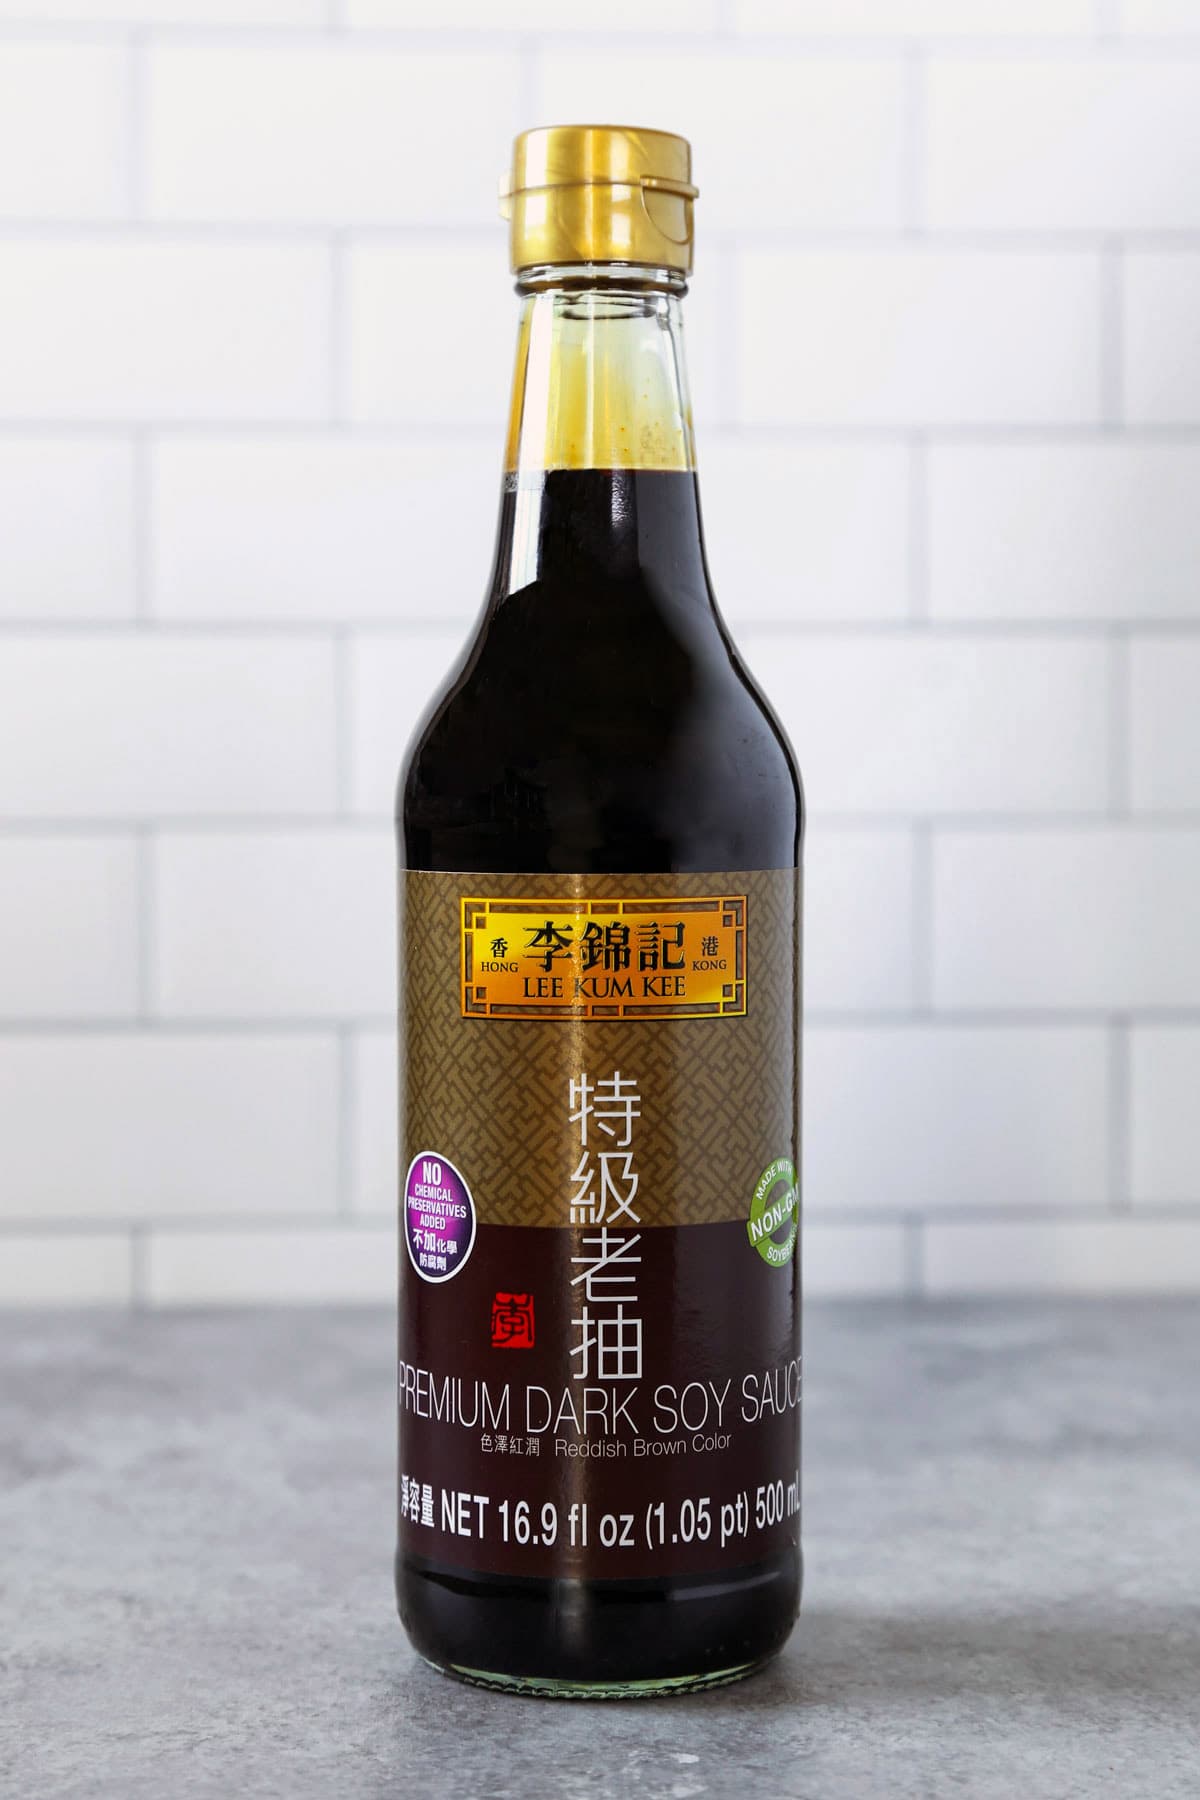 Lee Kum Kee dark soy sauce